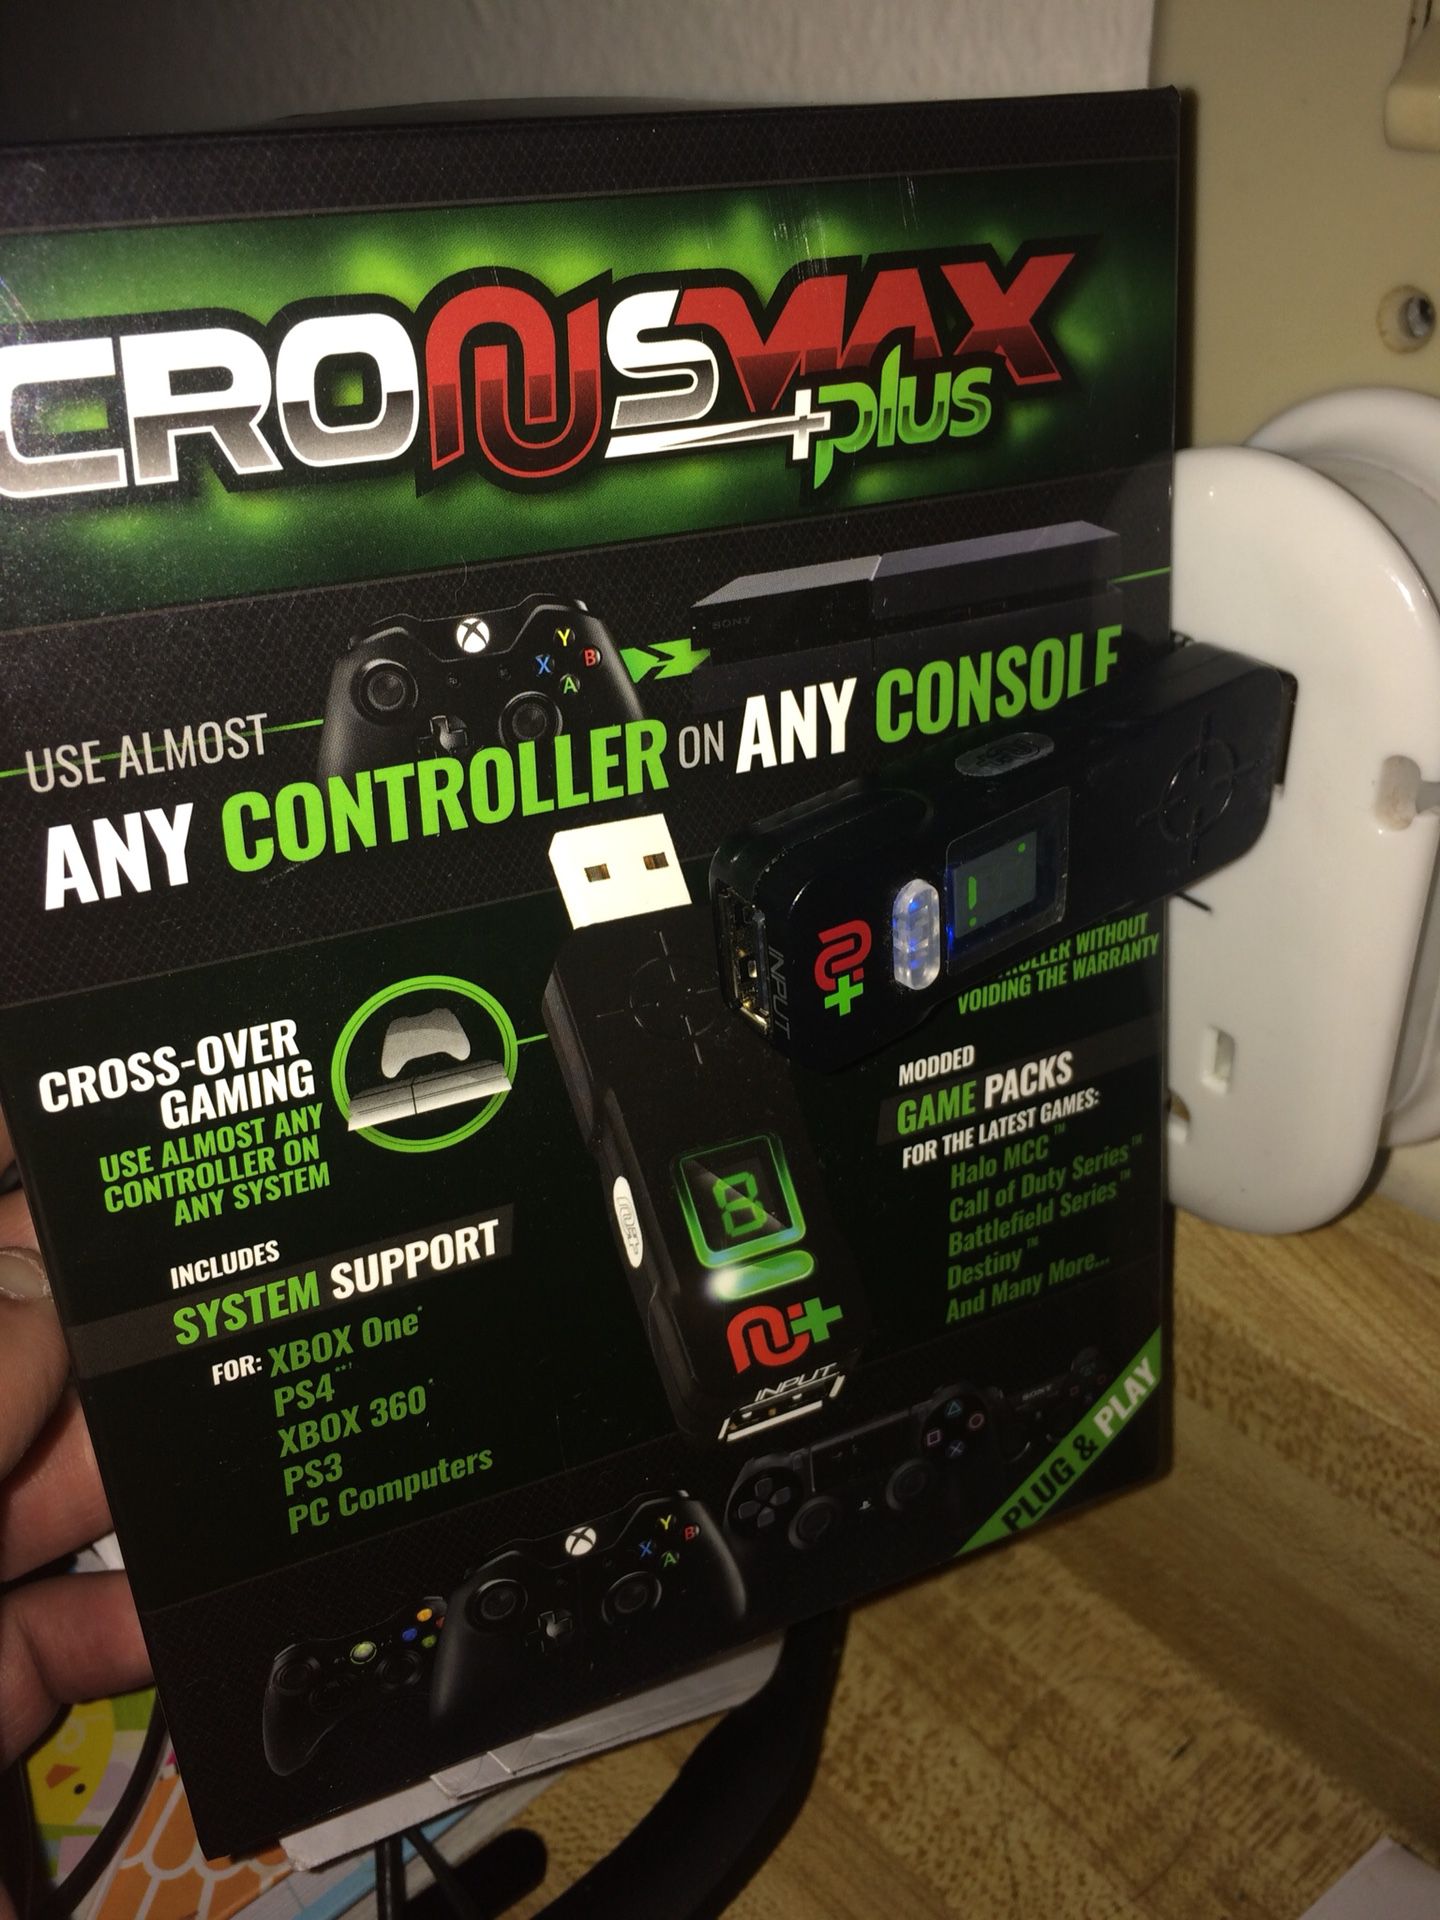 CronusMax Plus - Consoles! for Phoenix, AZ - OfferUp